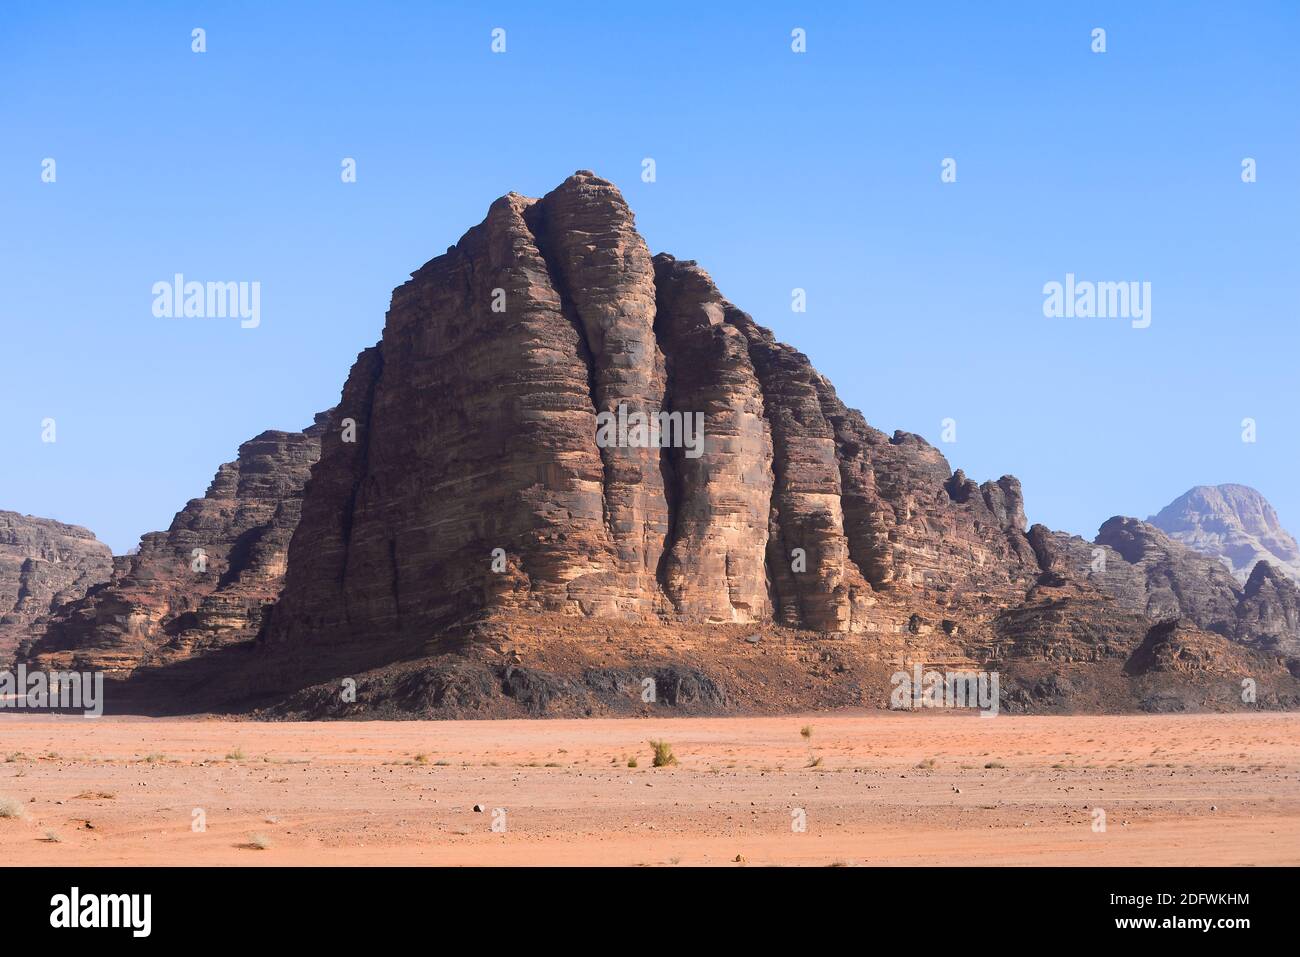 Die sieben Säulen der Weisheit im Wadi Rum, Jordanien. Valley of the Moon Rock Formation benannt nach dem berühmten Epos Lawrence von Arabien. Wadi al-Qamar. Stockfoto